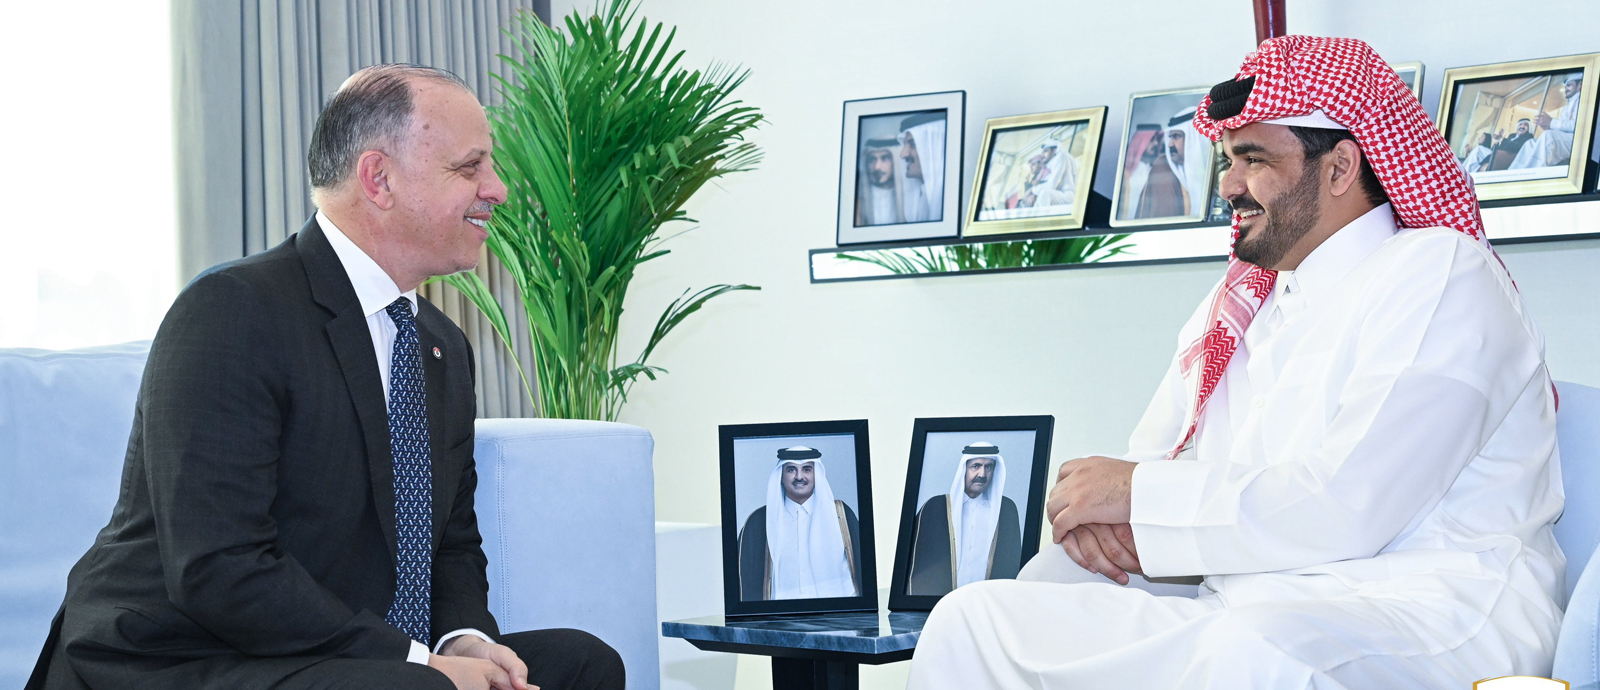 سعادة الشيح جوعان بن حمد آل ثاني يجتمع مع رئيس اللجنة الاولمبية الأردنية